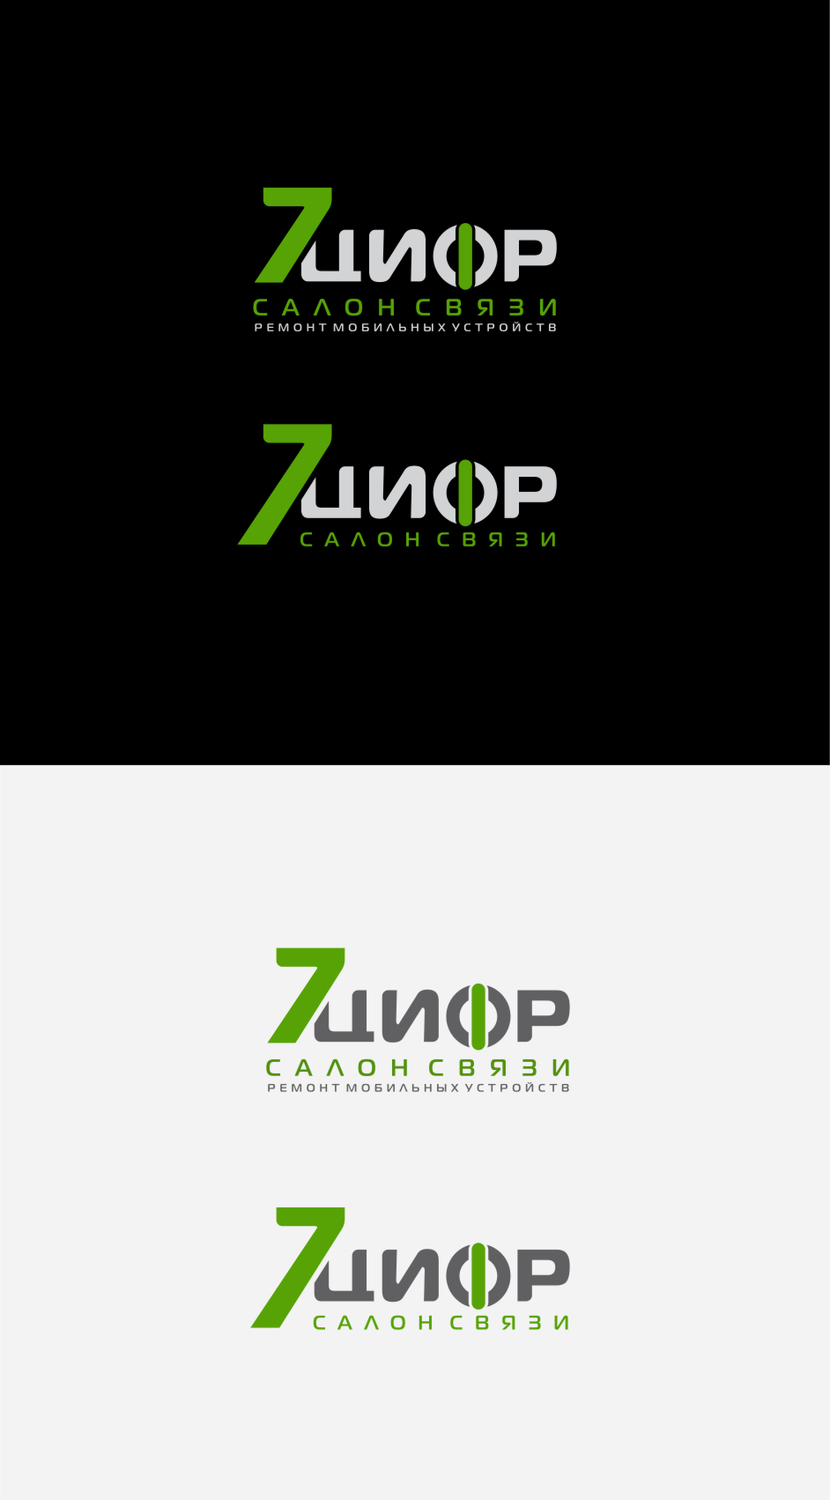 070 - Логотип компании 7Цифр (салон связи, ремонт телефонов)